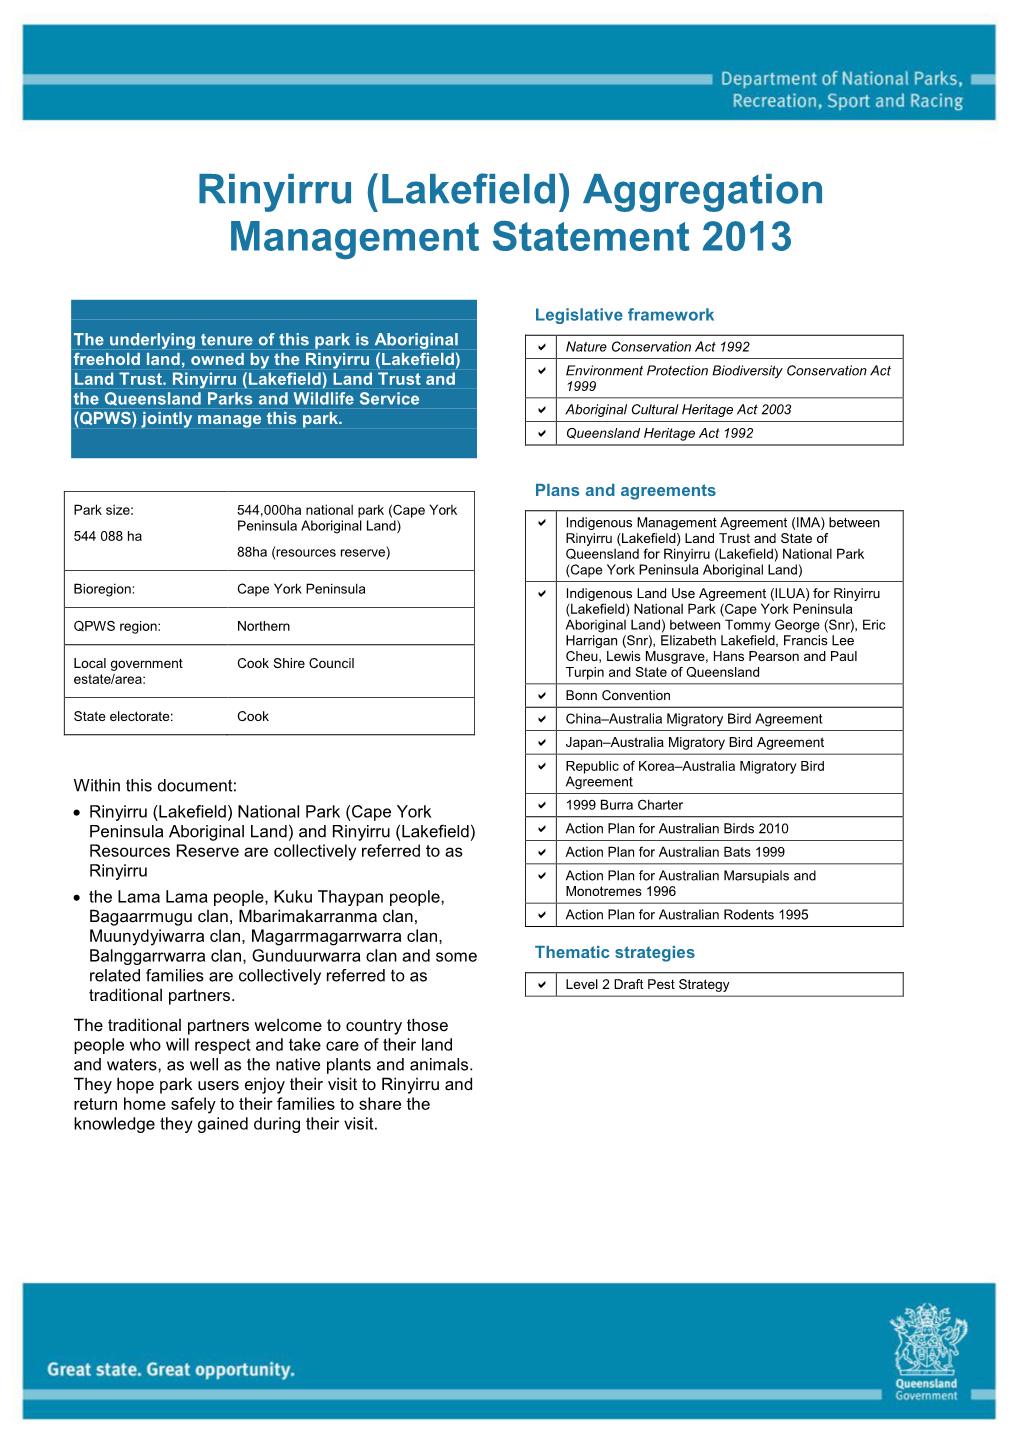 Rinyirru (Lakefield) Aggregation Management Statement 2013